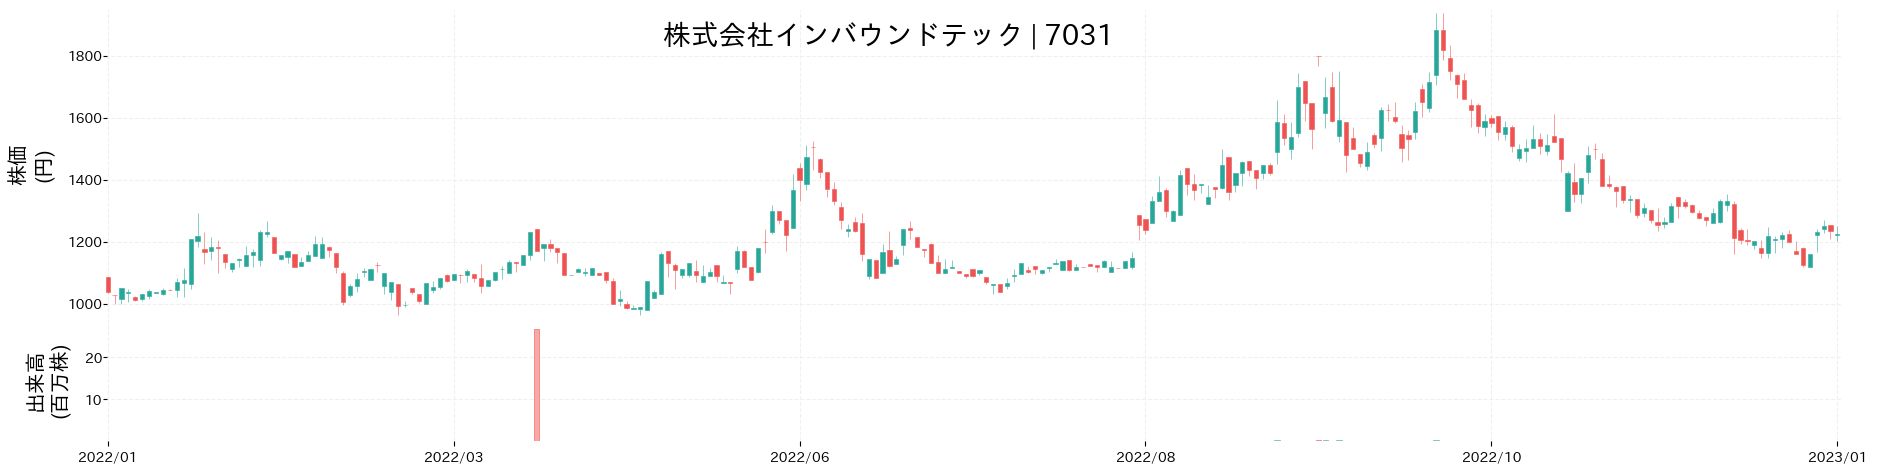 インバウンドテックの株価推移(2022)